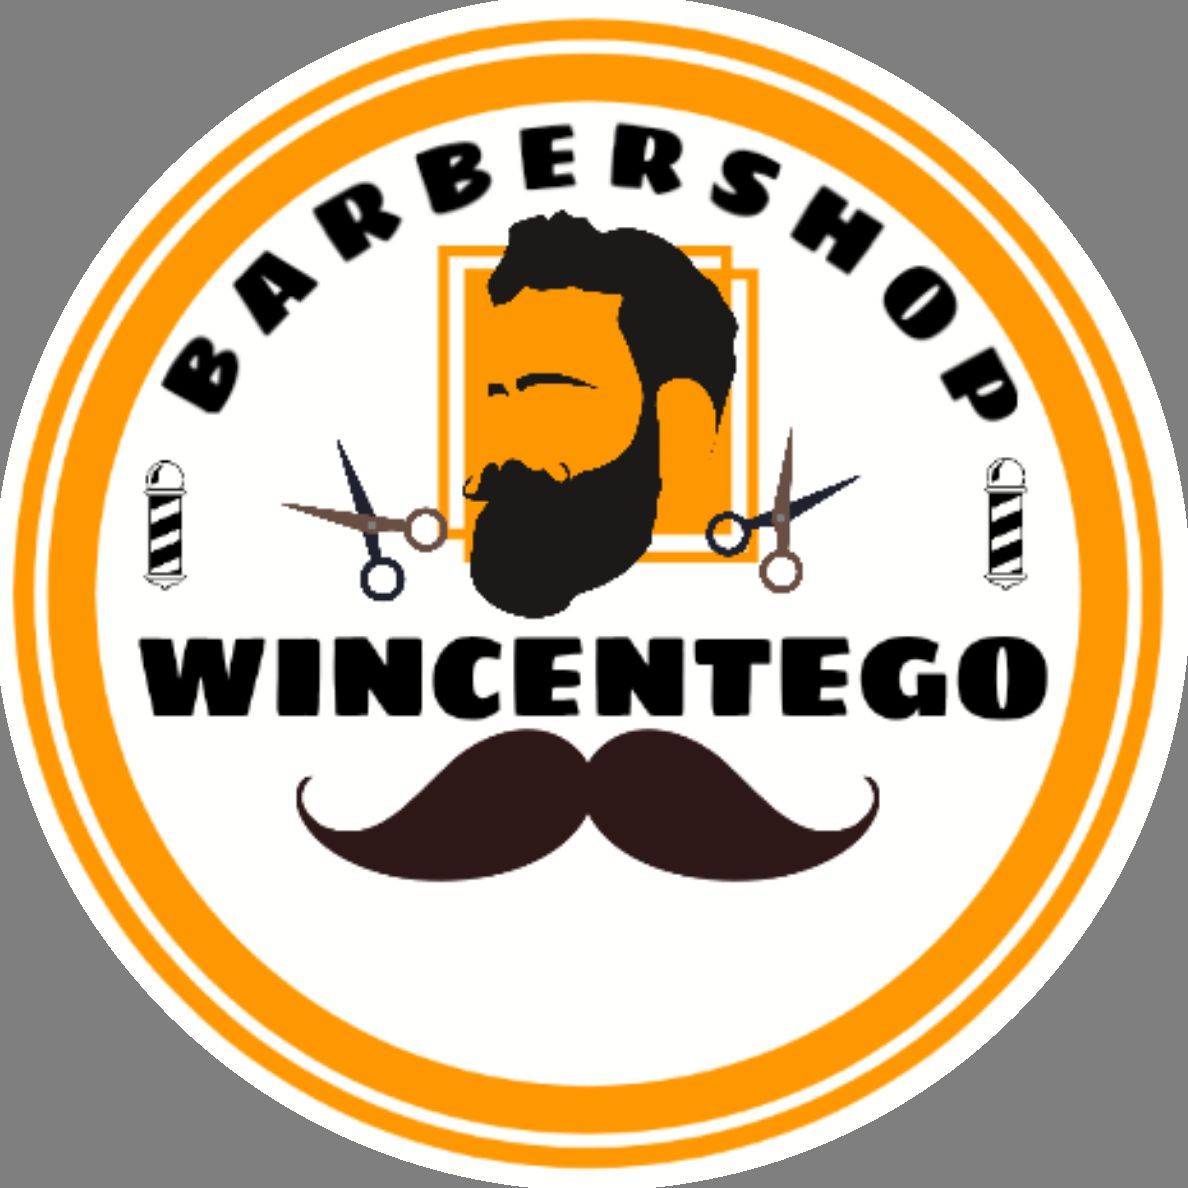 BARBER SHOP WINCENTEGO, św. Wincentego 18, Lokol 4, 03-505, Warszawa, Targówek